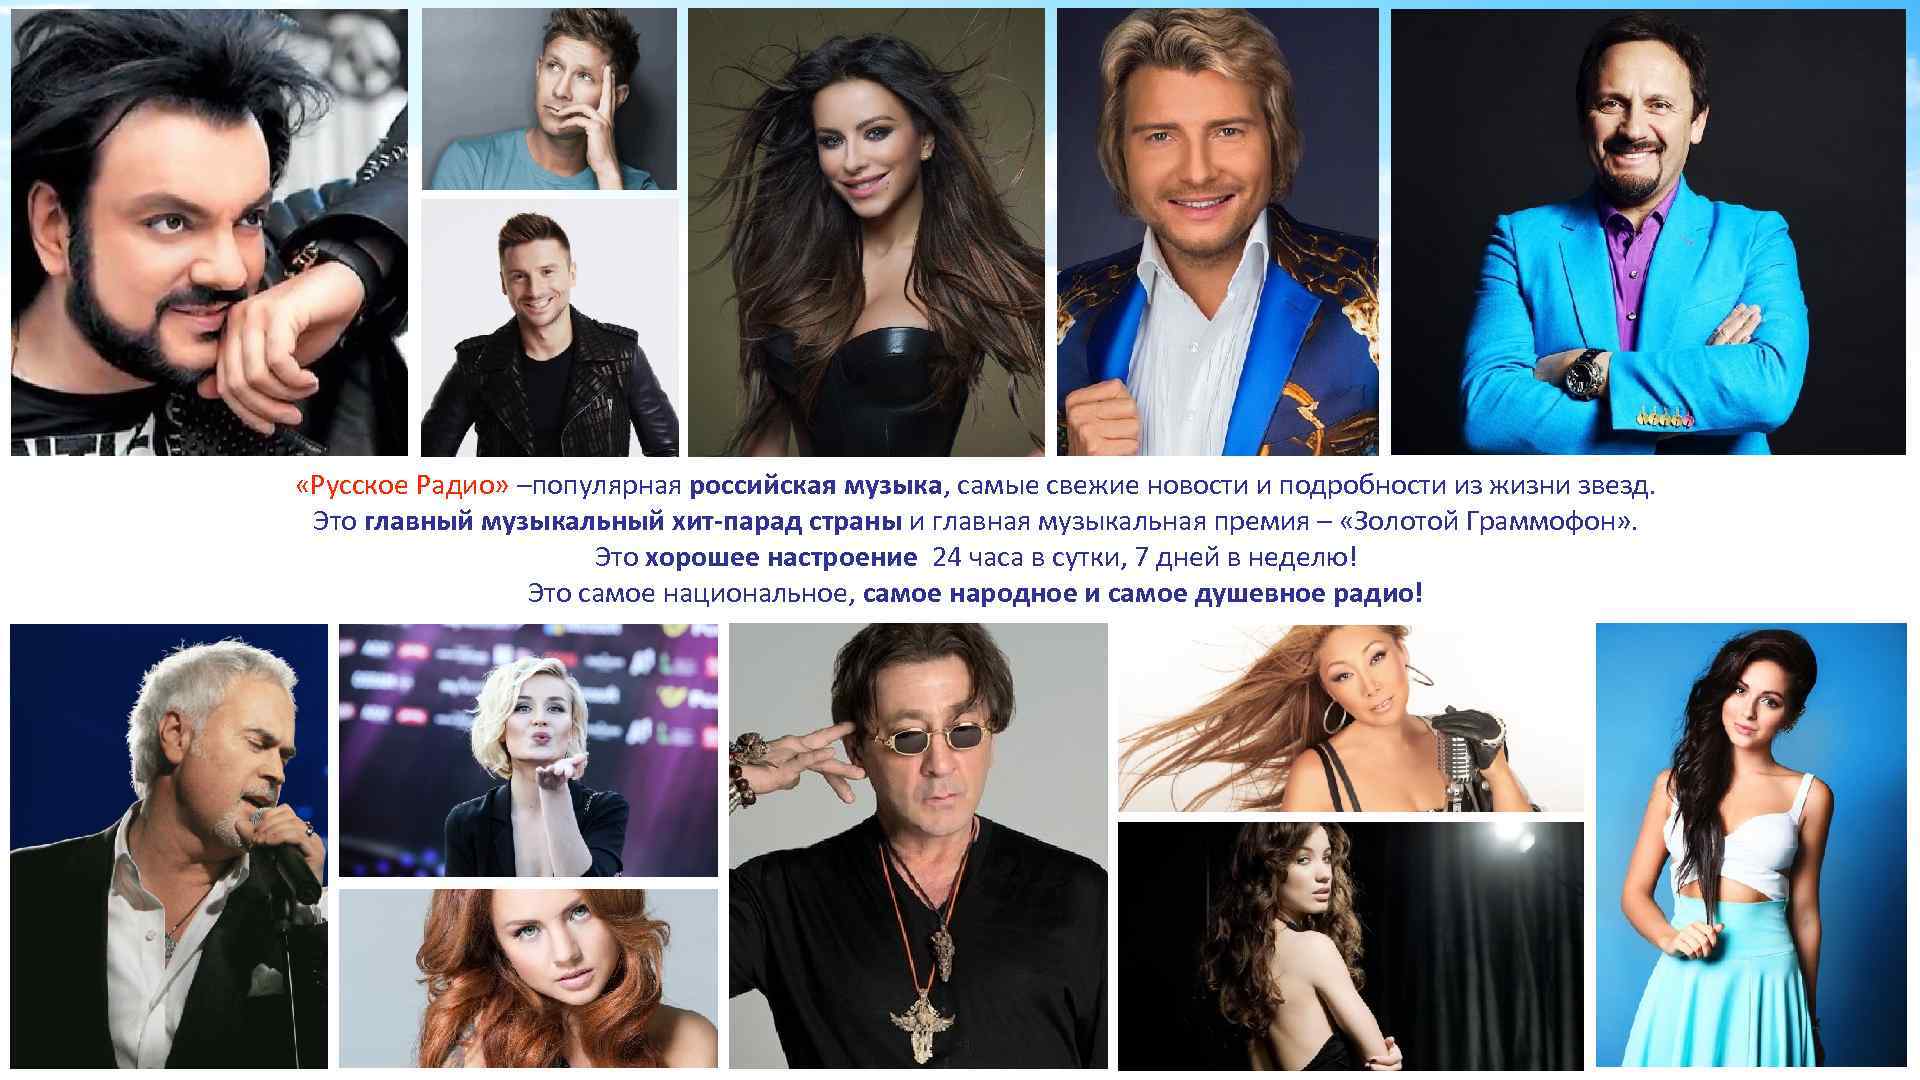  «Русское Радио» –популярная российская музыка, самые свежие новости и подробности из жизни звезд.